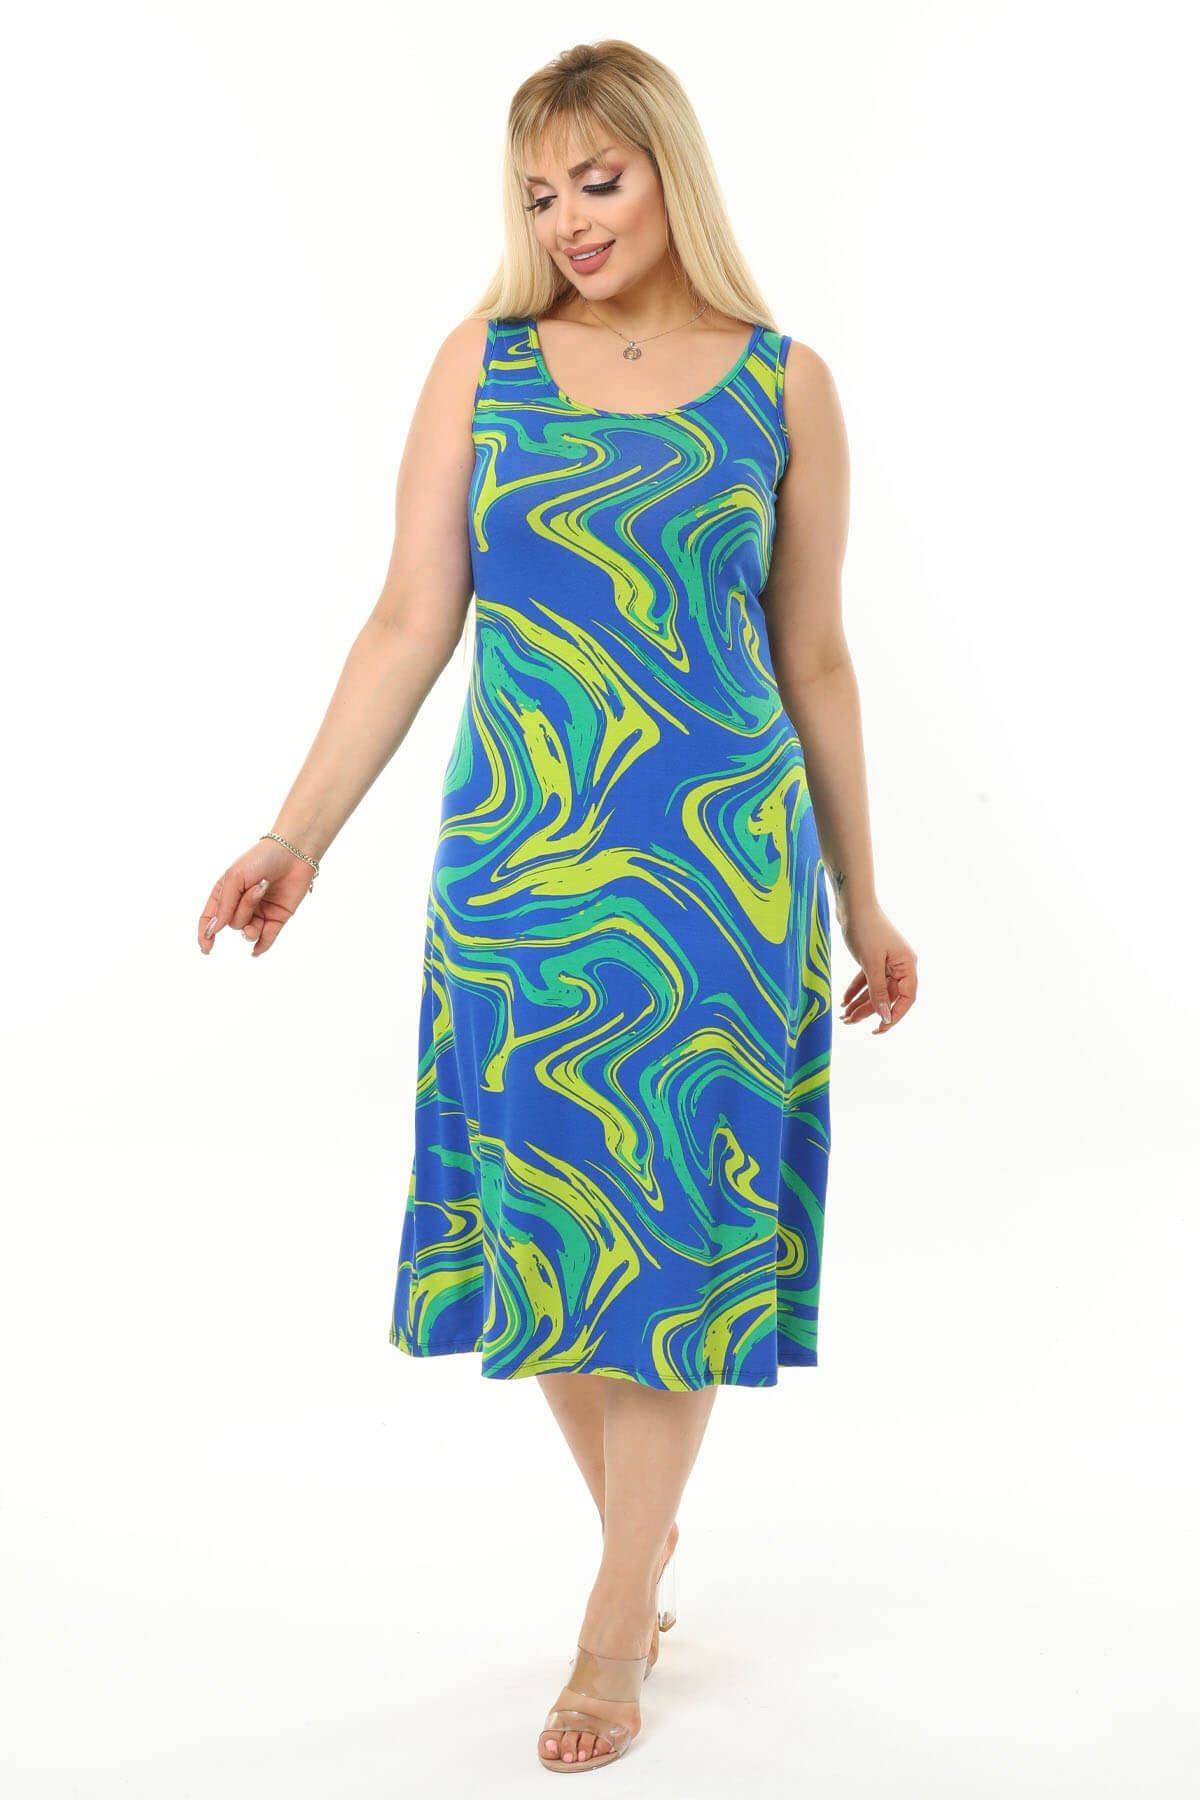 Mooi XXL Kadın Mavi Yeşil Dalga Desenli Askılı Büyük Beden Elbise